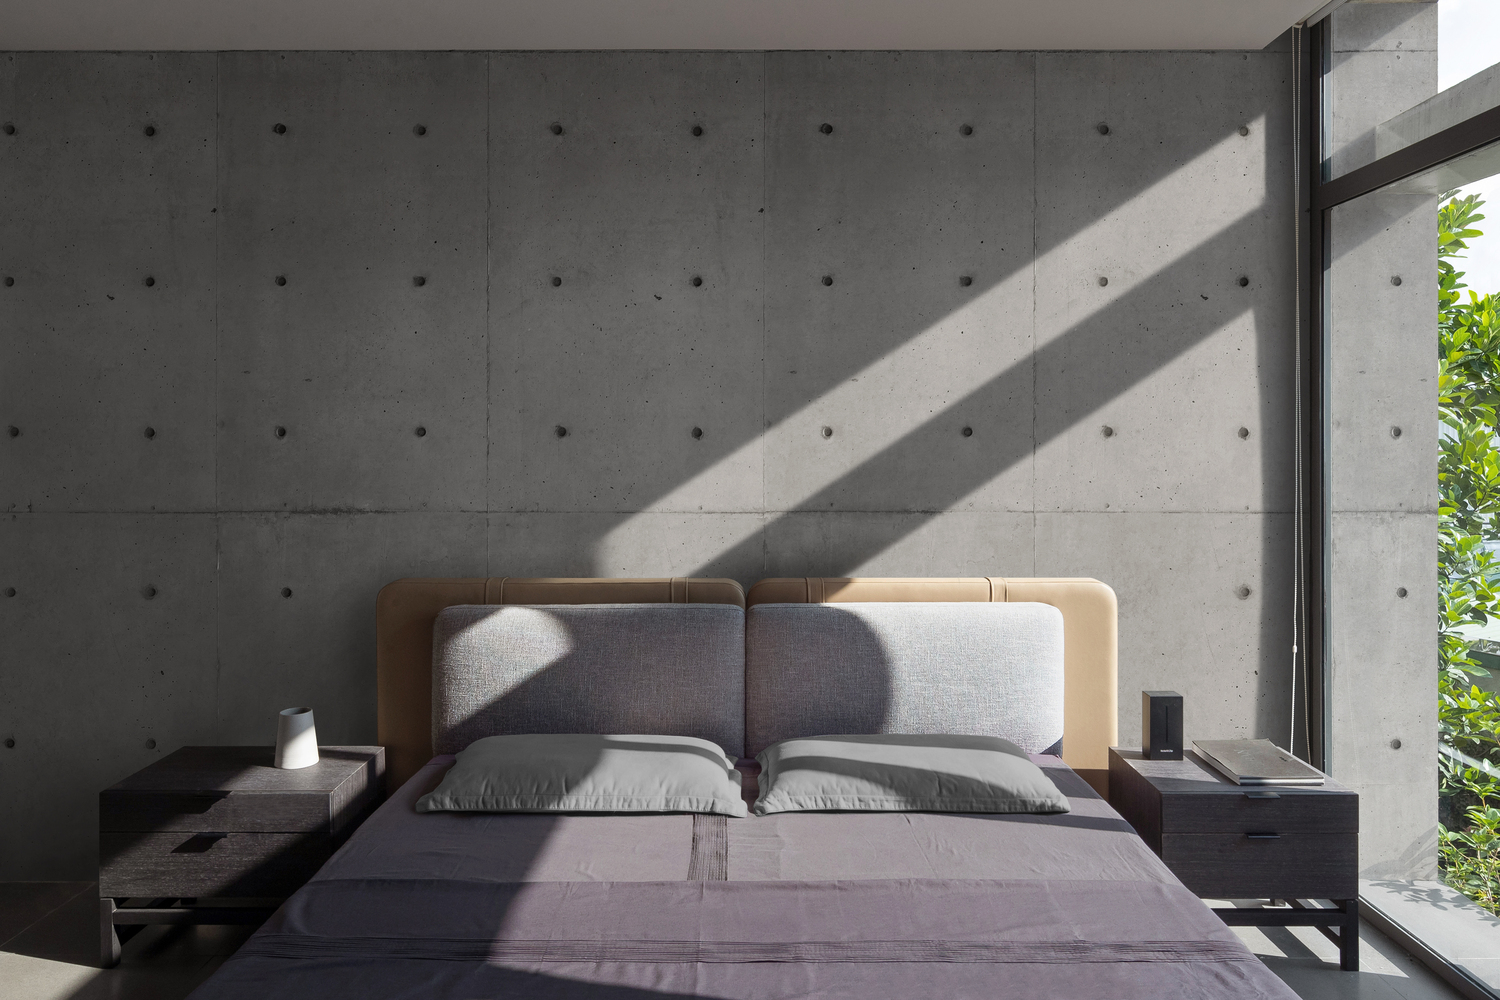 hình ảnh phòng ngủ với tường đầu giường bê tông xám, ga màu tím, cửa kính lớn